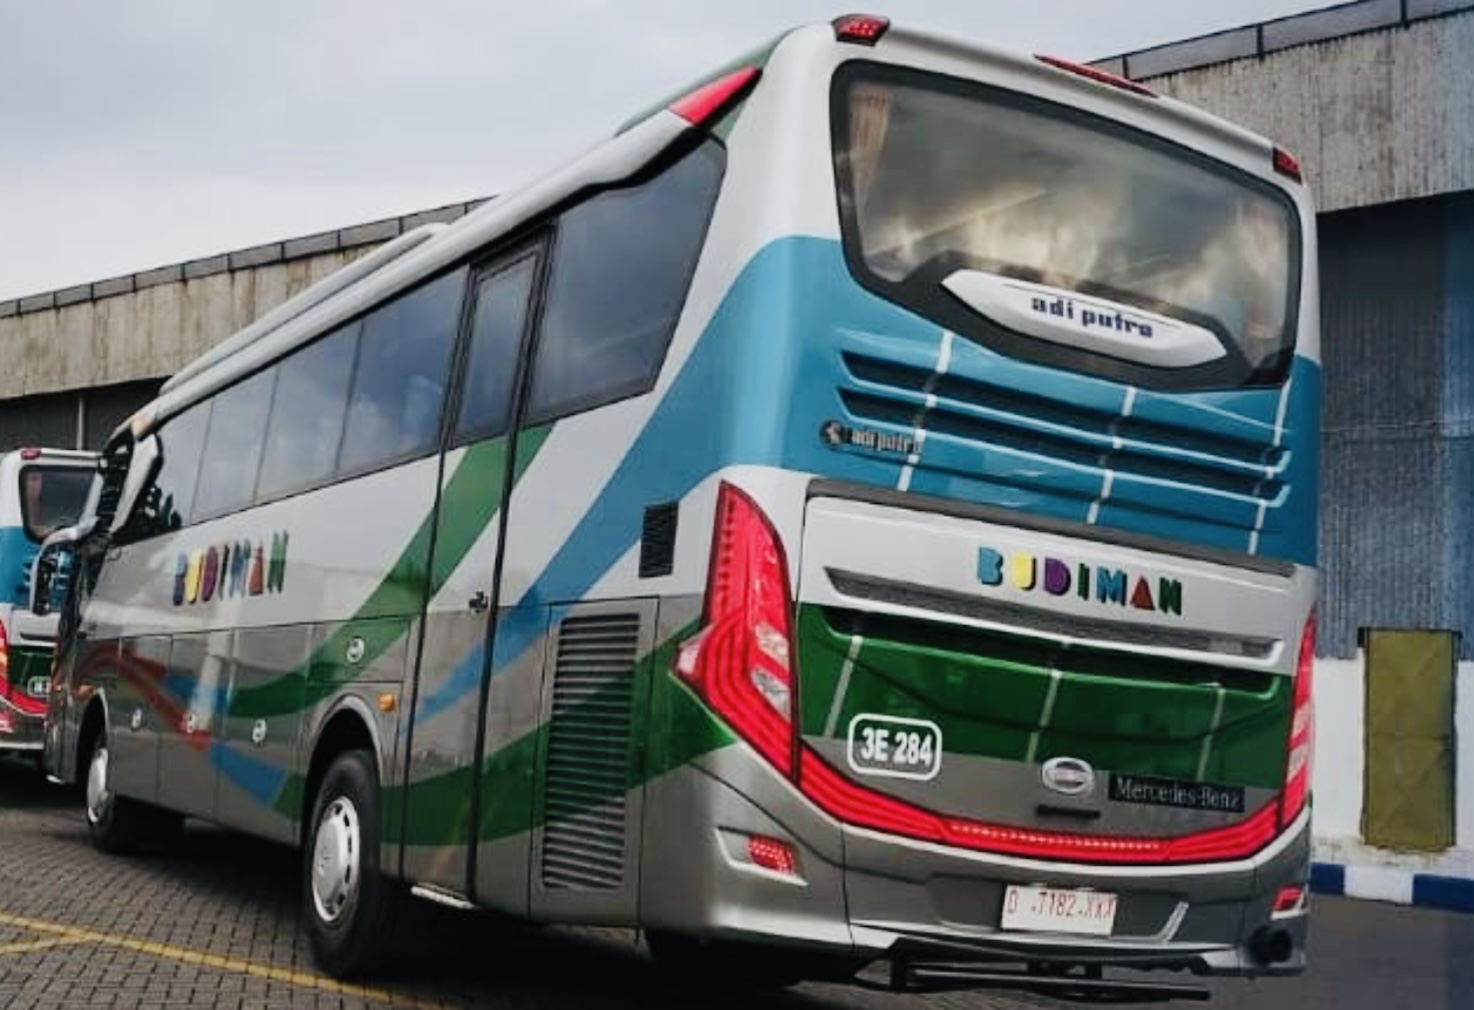 2 Perusahaan Bus dari Tasik Ini Pernah Guncangkan Politik Kota Santri, Keduanya Sama-Sama Hebat